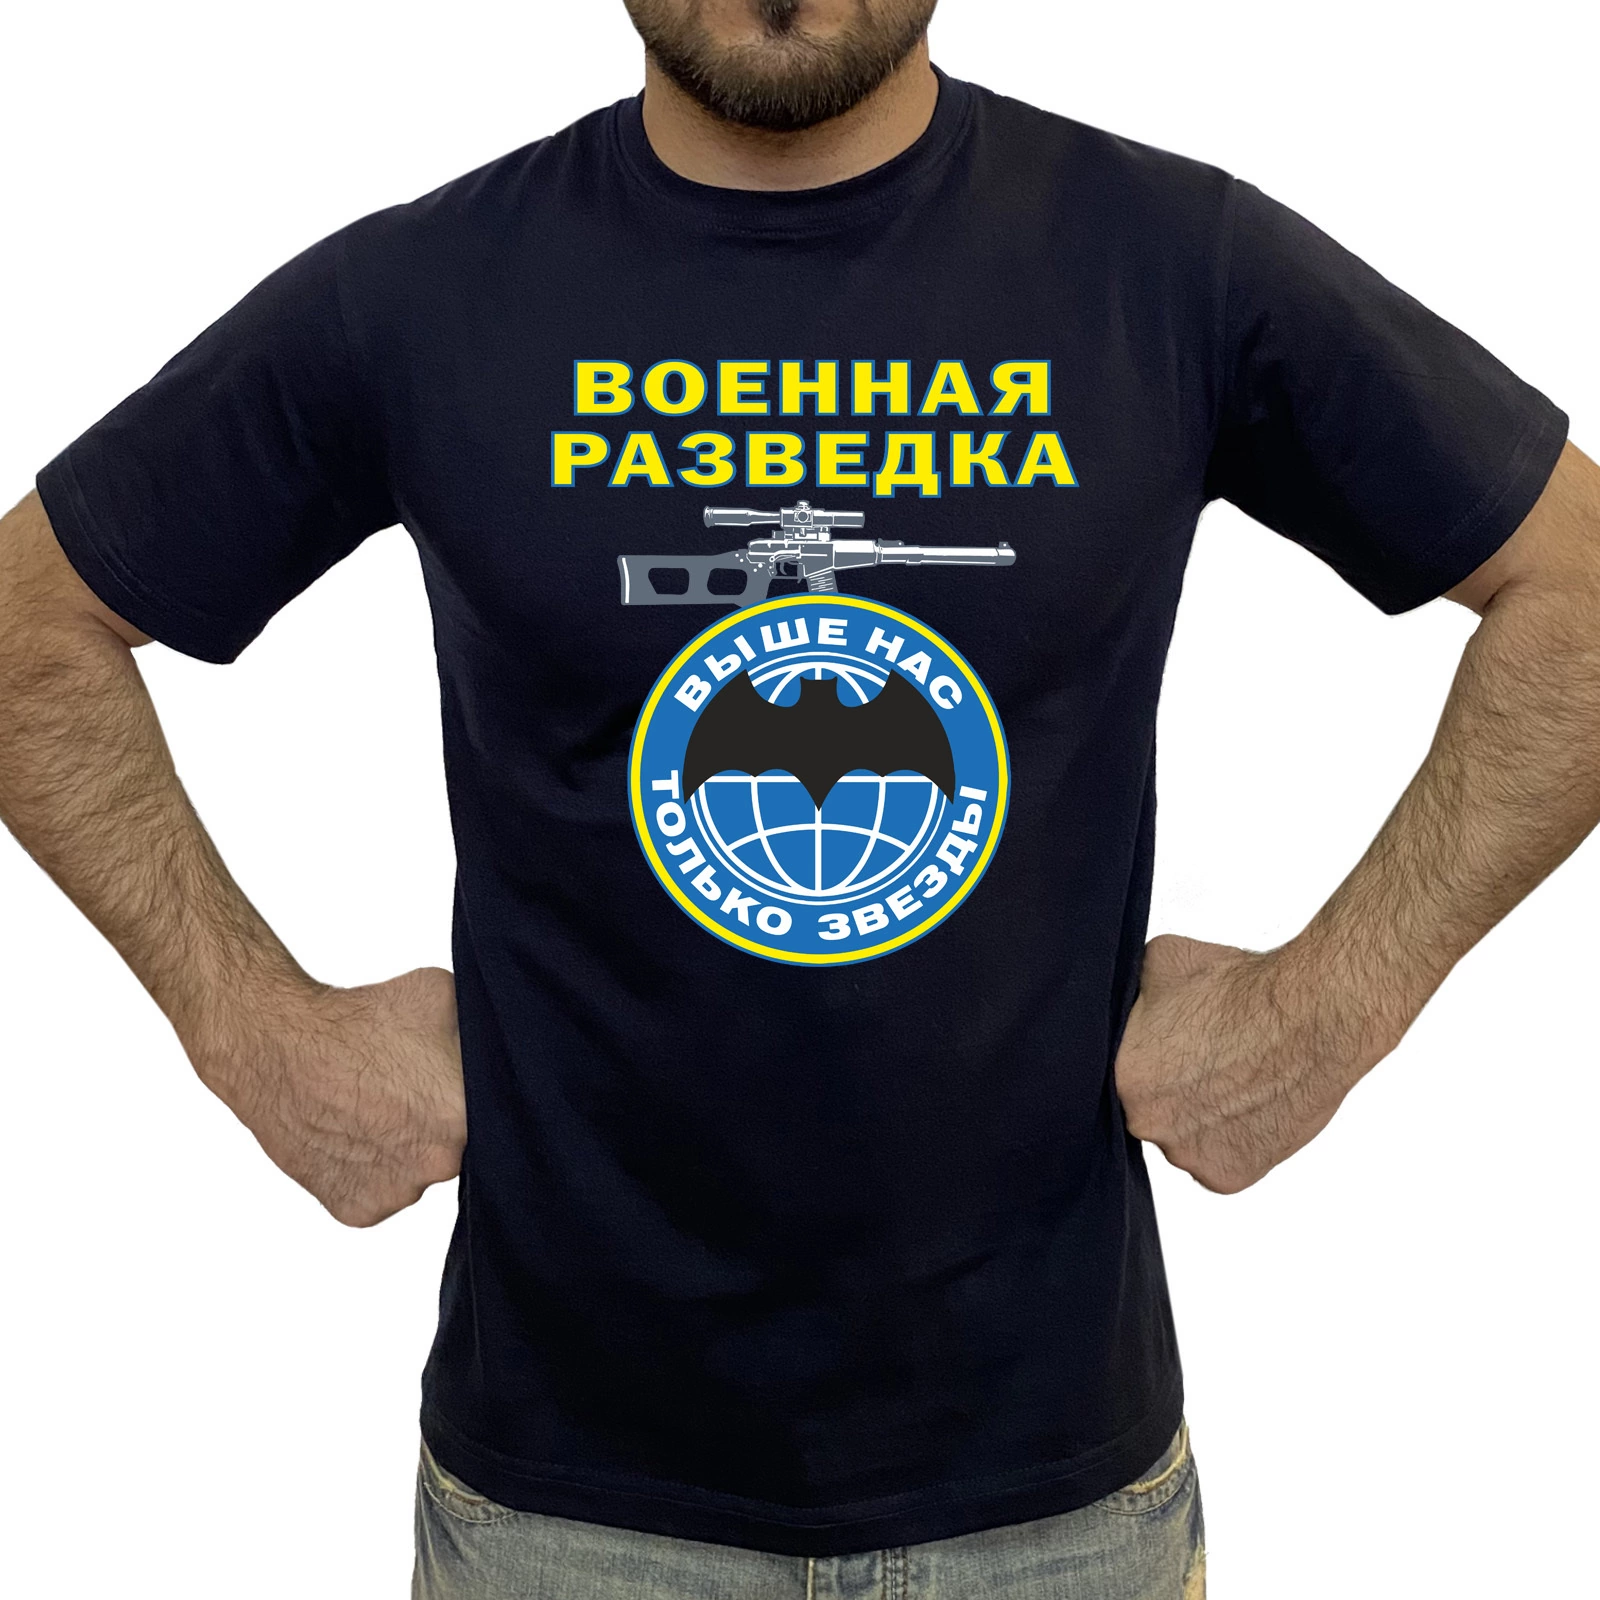 Натуральная мужская футболка Военная разведка №1013